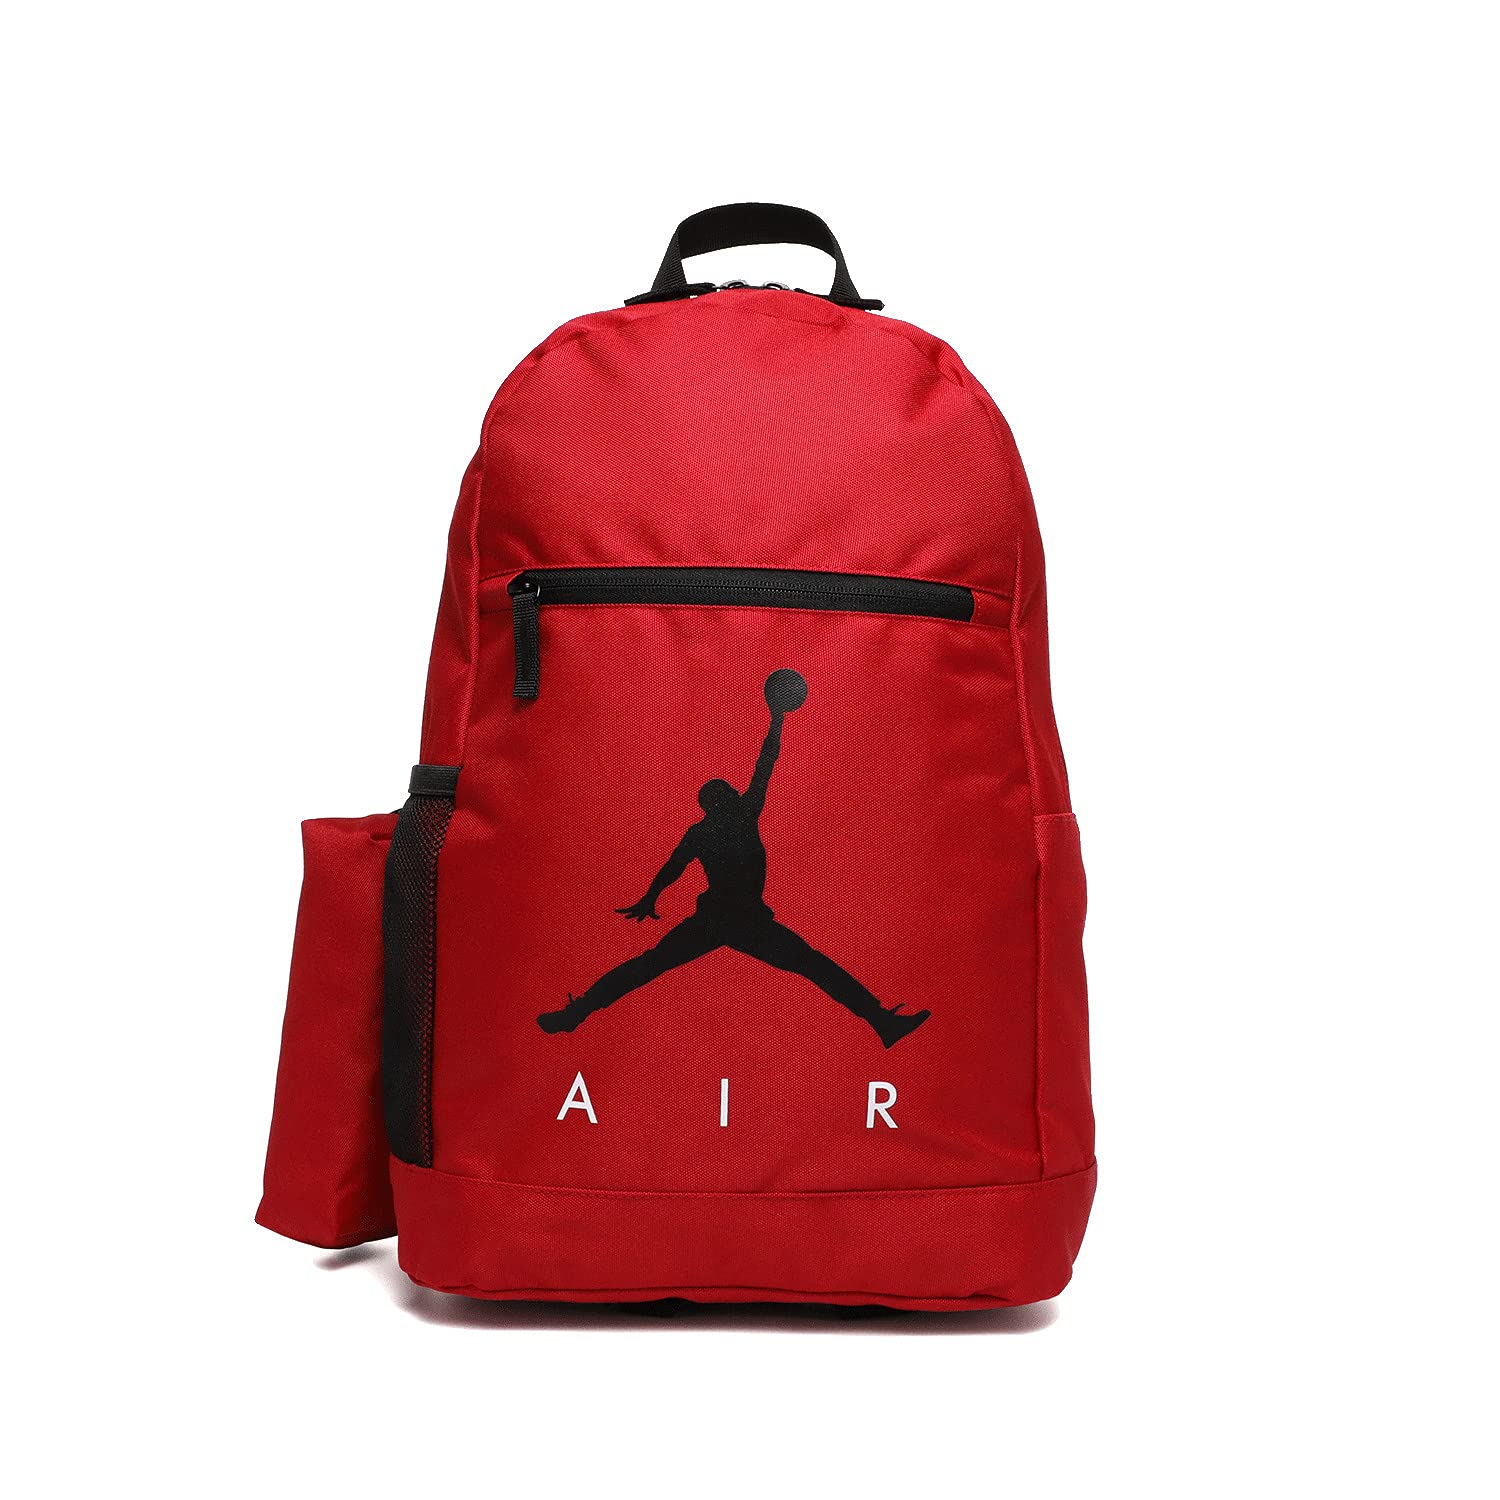 Image 1 of Jordan Air School Backpack (Big Kid)